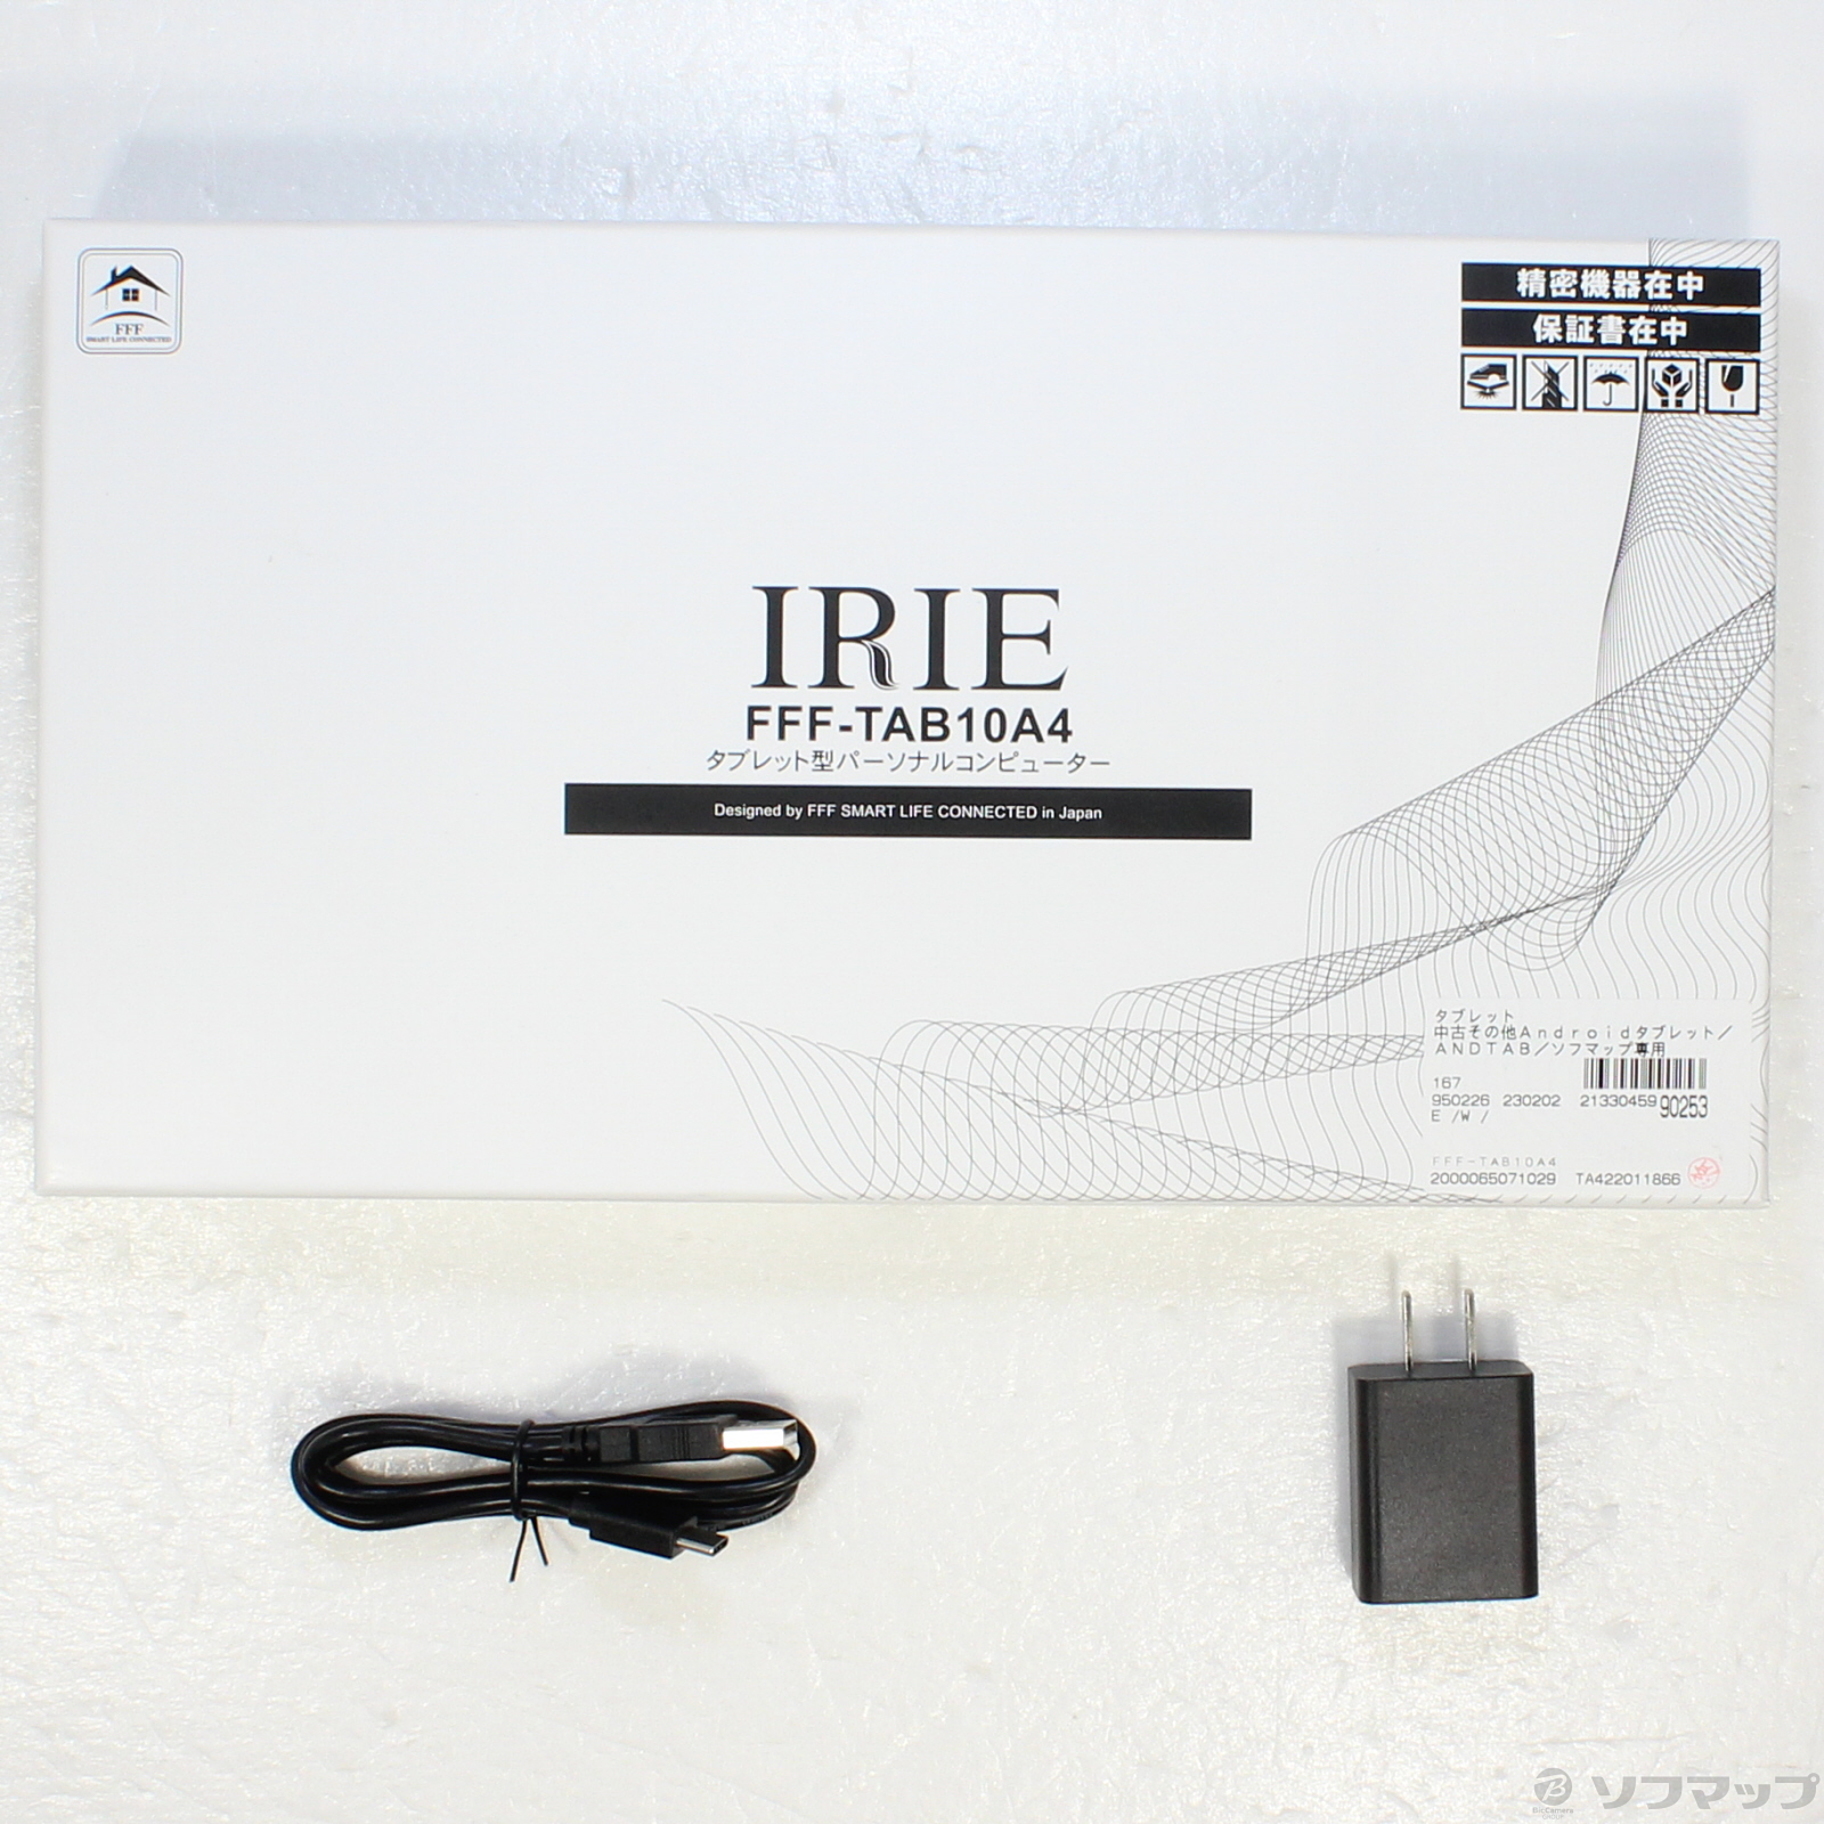 中古】IRIE 128GB ブラック FFF-TAB10A4 Wi-Fi [2133045990253] - 法人